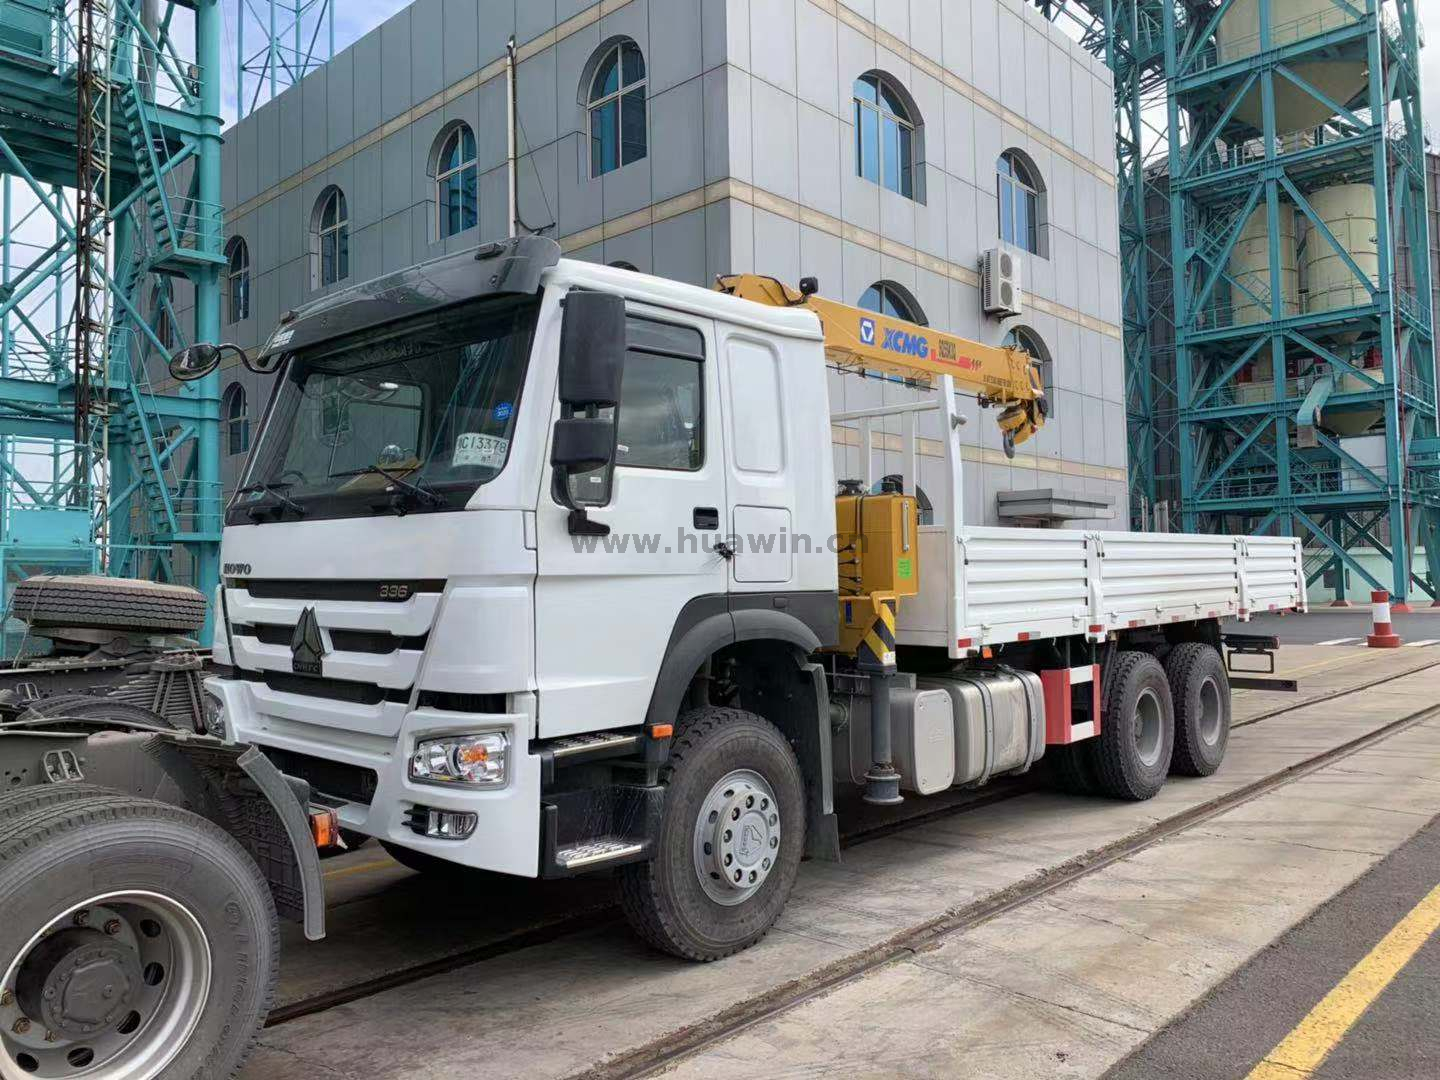 SINOTRUK HOWO 6x4 Crane Truck - 10Ton XCMG Telescopic Boom